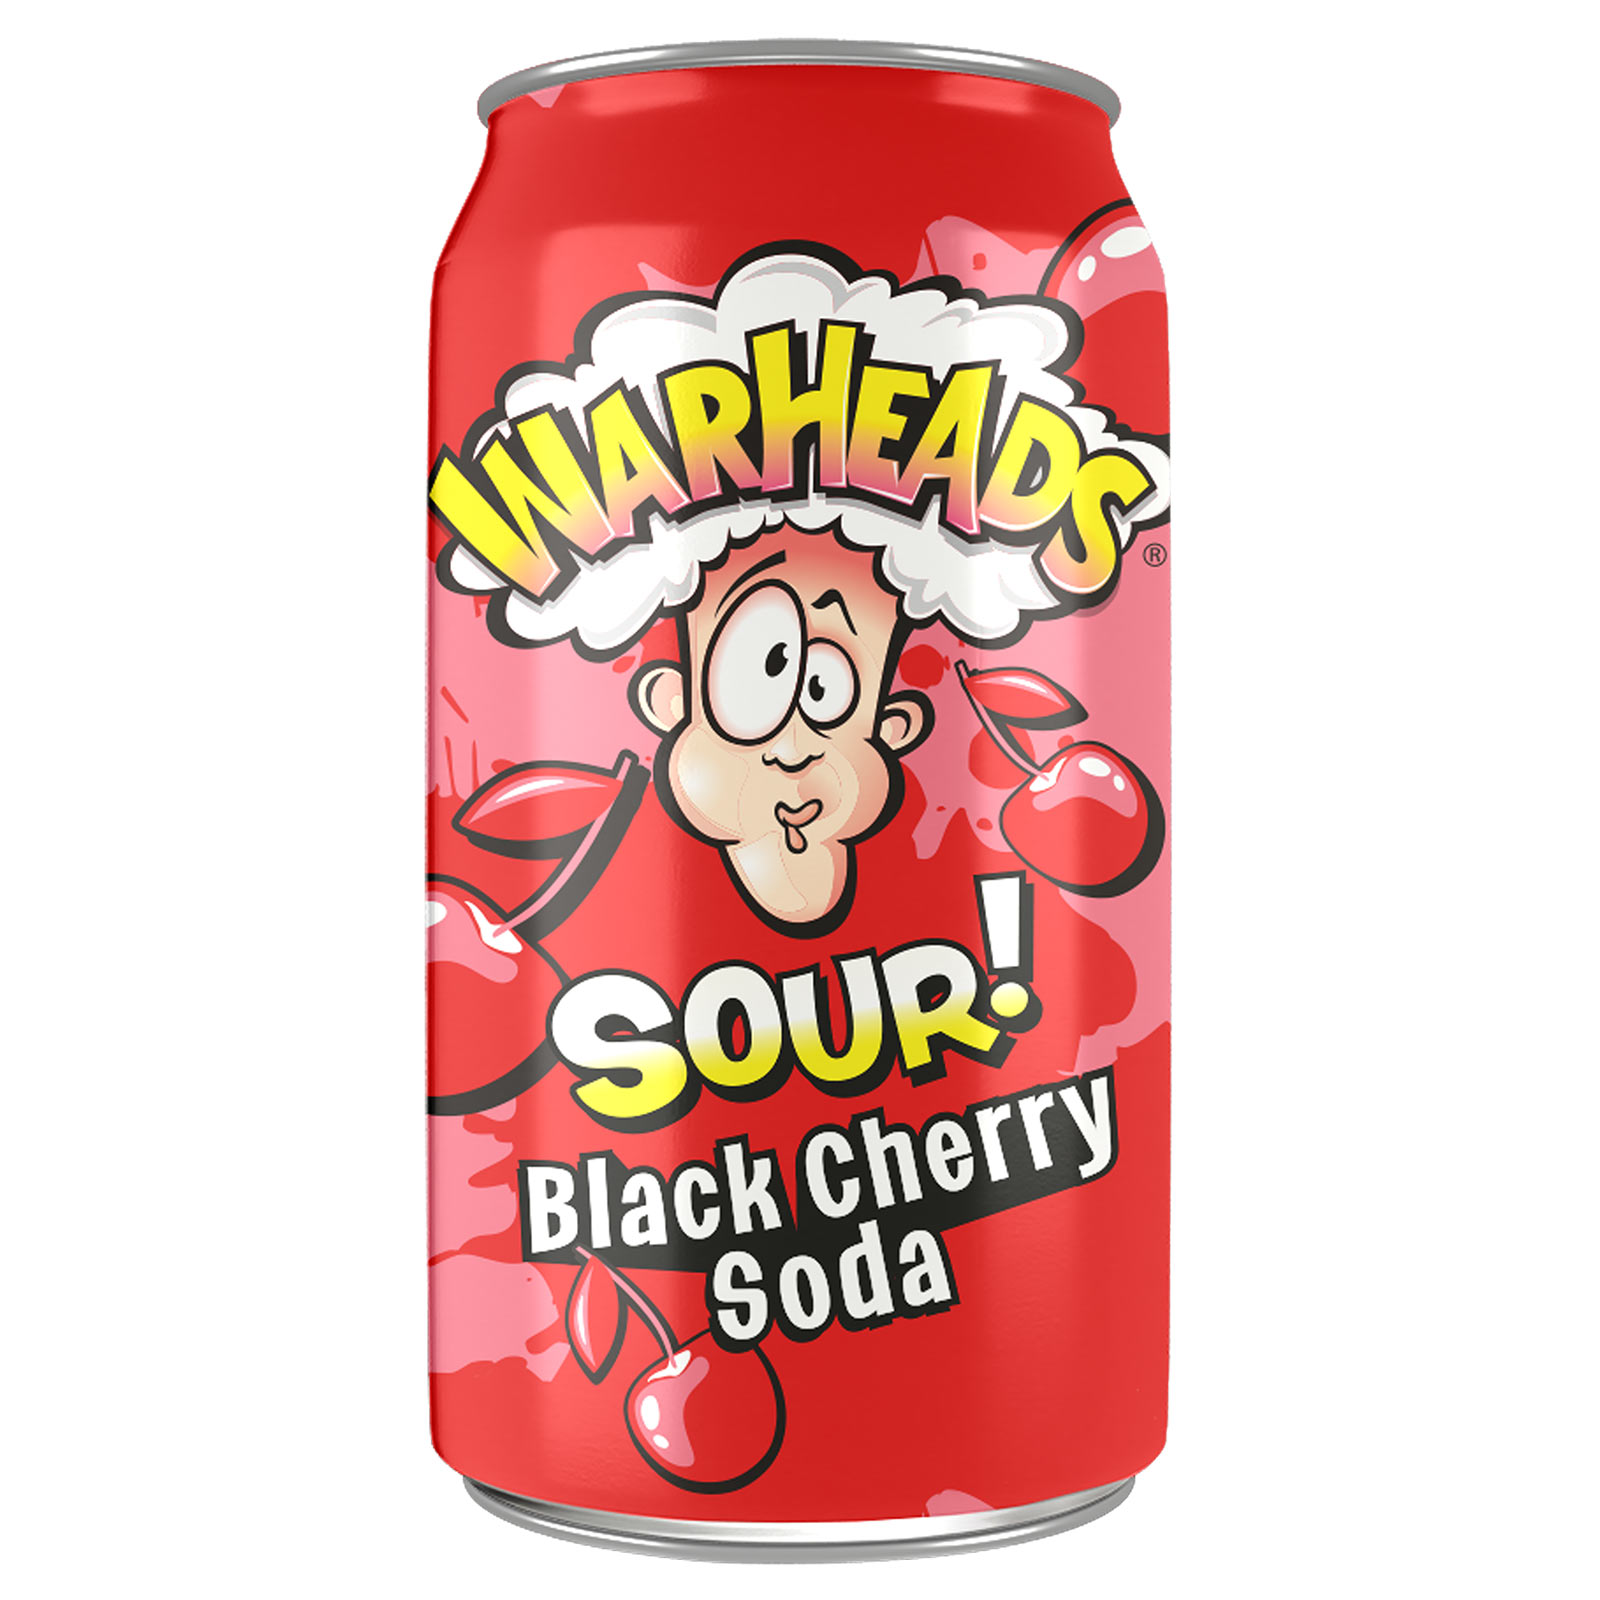 Warheads Sour Black Cherry Soda  Od nejoblíbenější americké značky super kyselých bonbónů přichází fantastické limonády s ovocnou příchutí s kyselým nádechem, který vás ohromí!
Kyselá limonáda Warheads s příchutí  ...